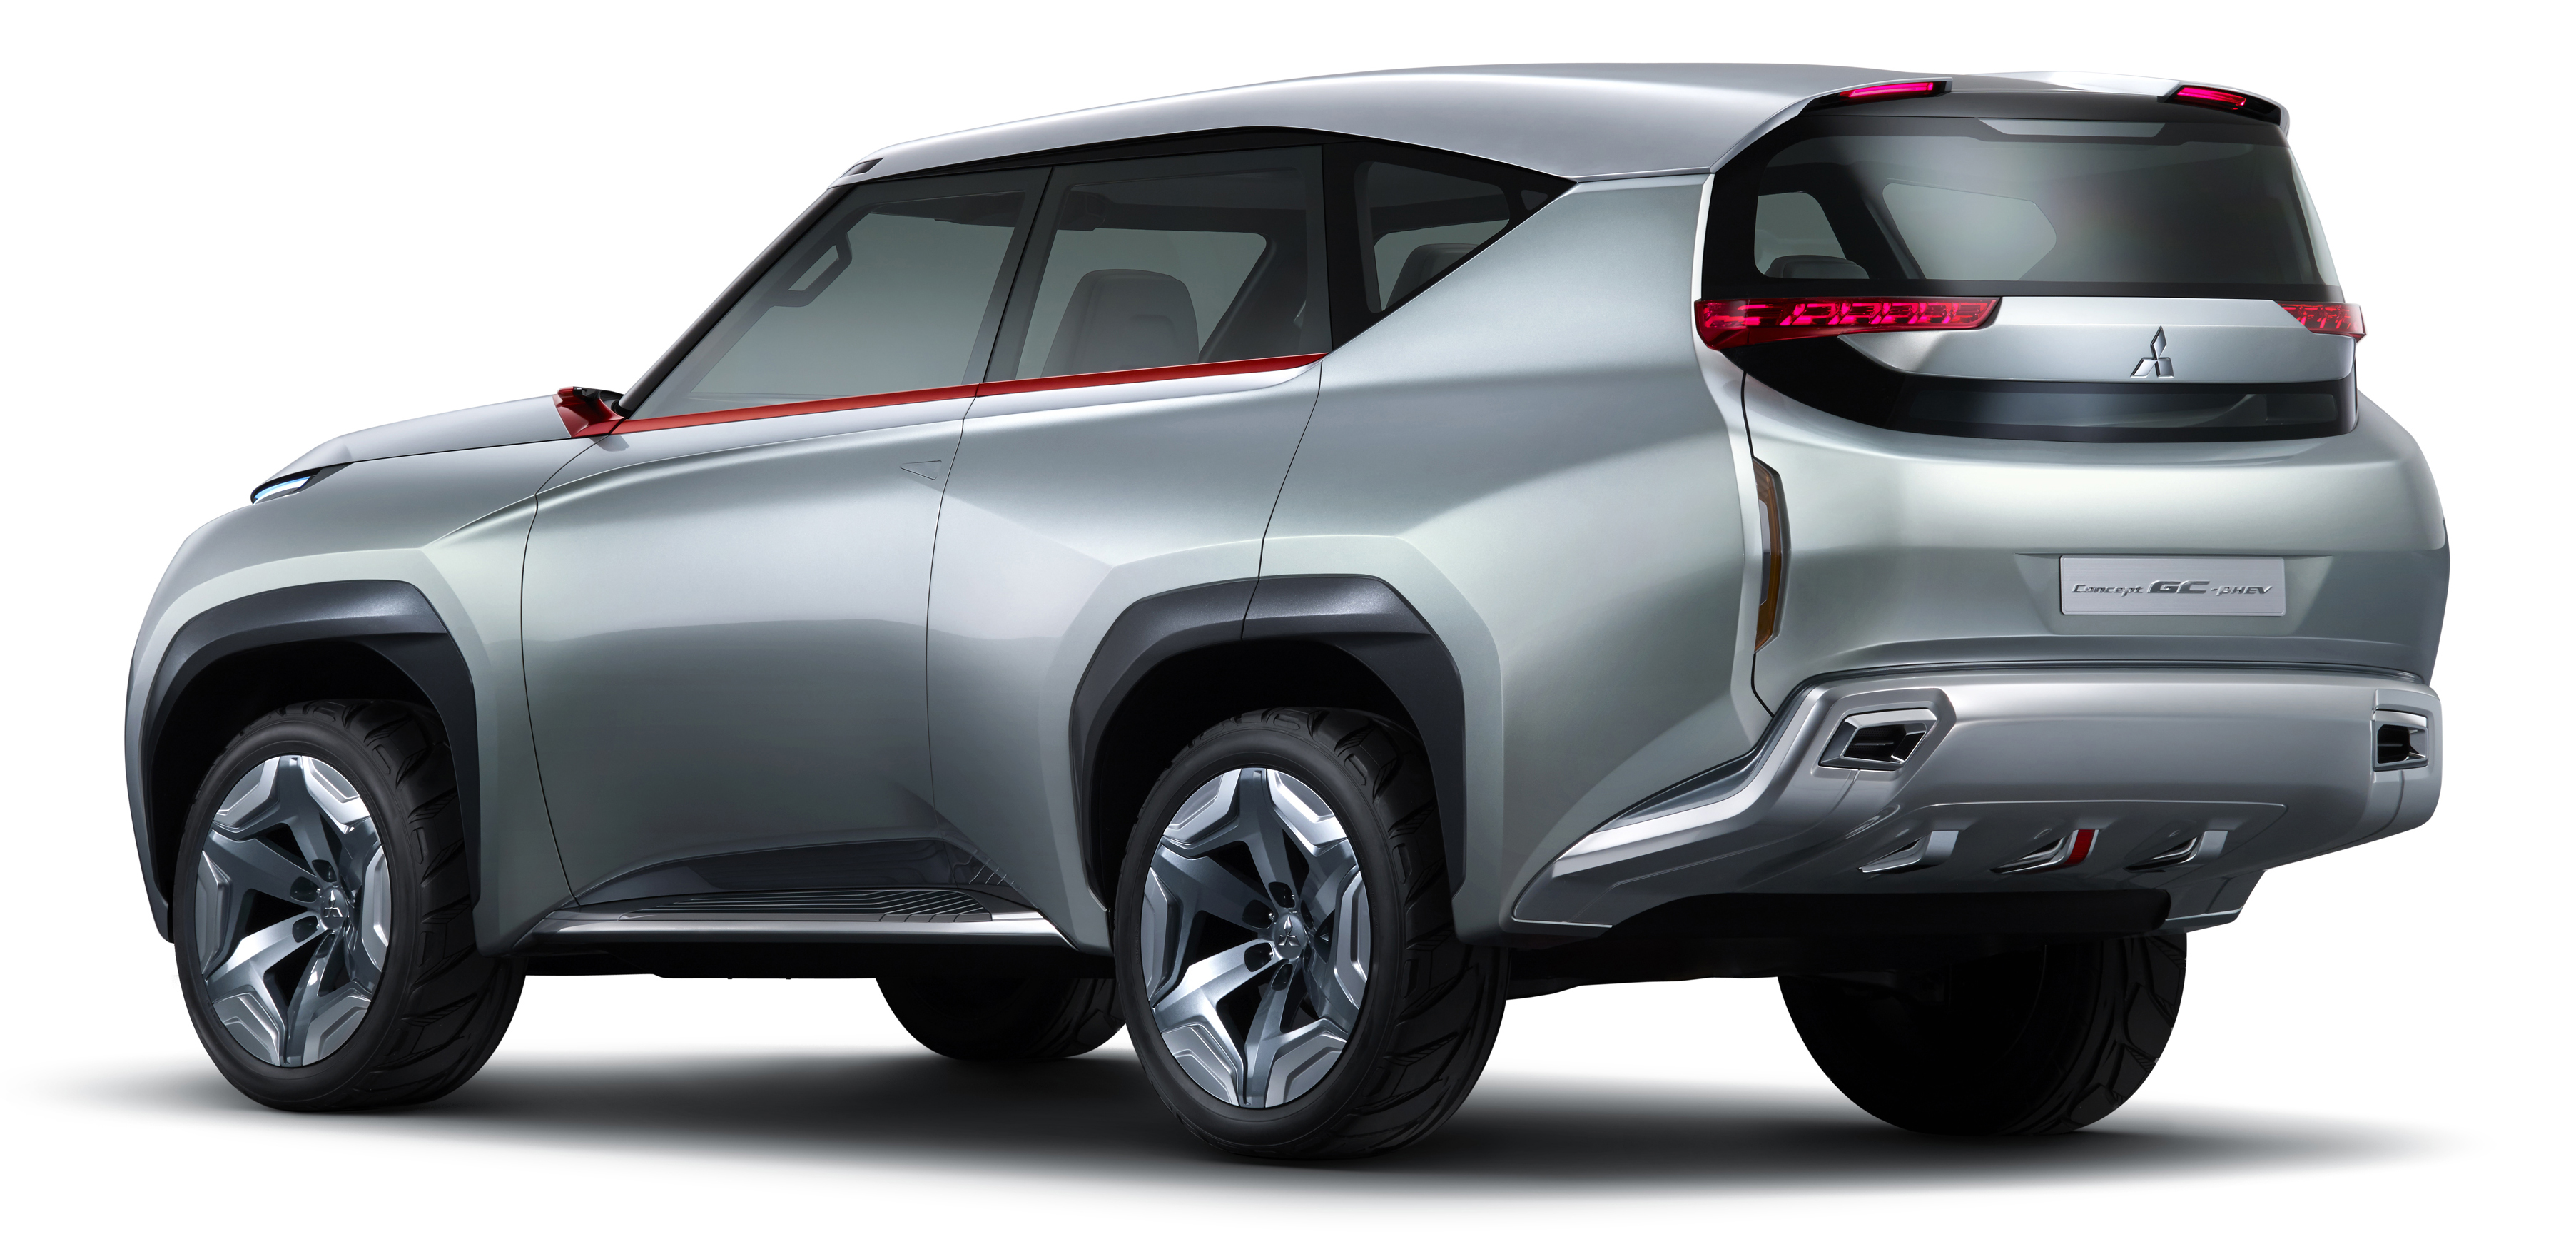 Mitsubishi Concept GC-PHEV, 2013